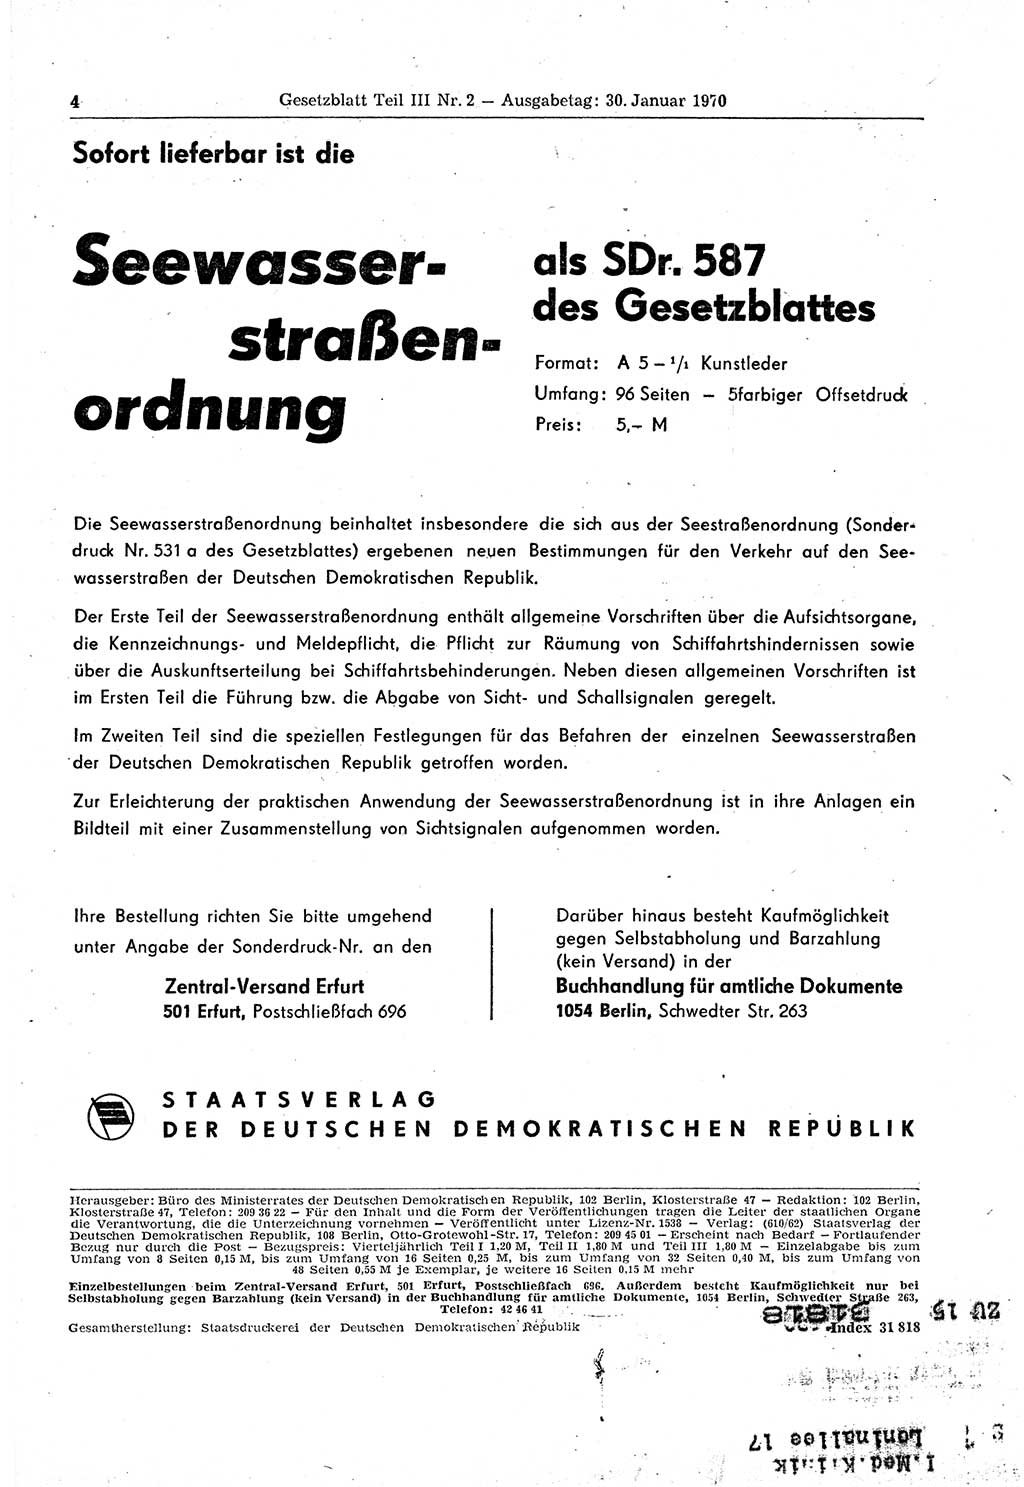 Gesetzblatt (GBl.) der Deutschen Demokratischen Republik (DDR) Teil ⅠⅠⅠ 1970, Seite 4 (GBl. DDR ⅠⅠⅠ 1970, S. 4)